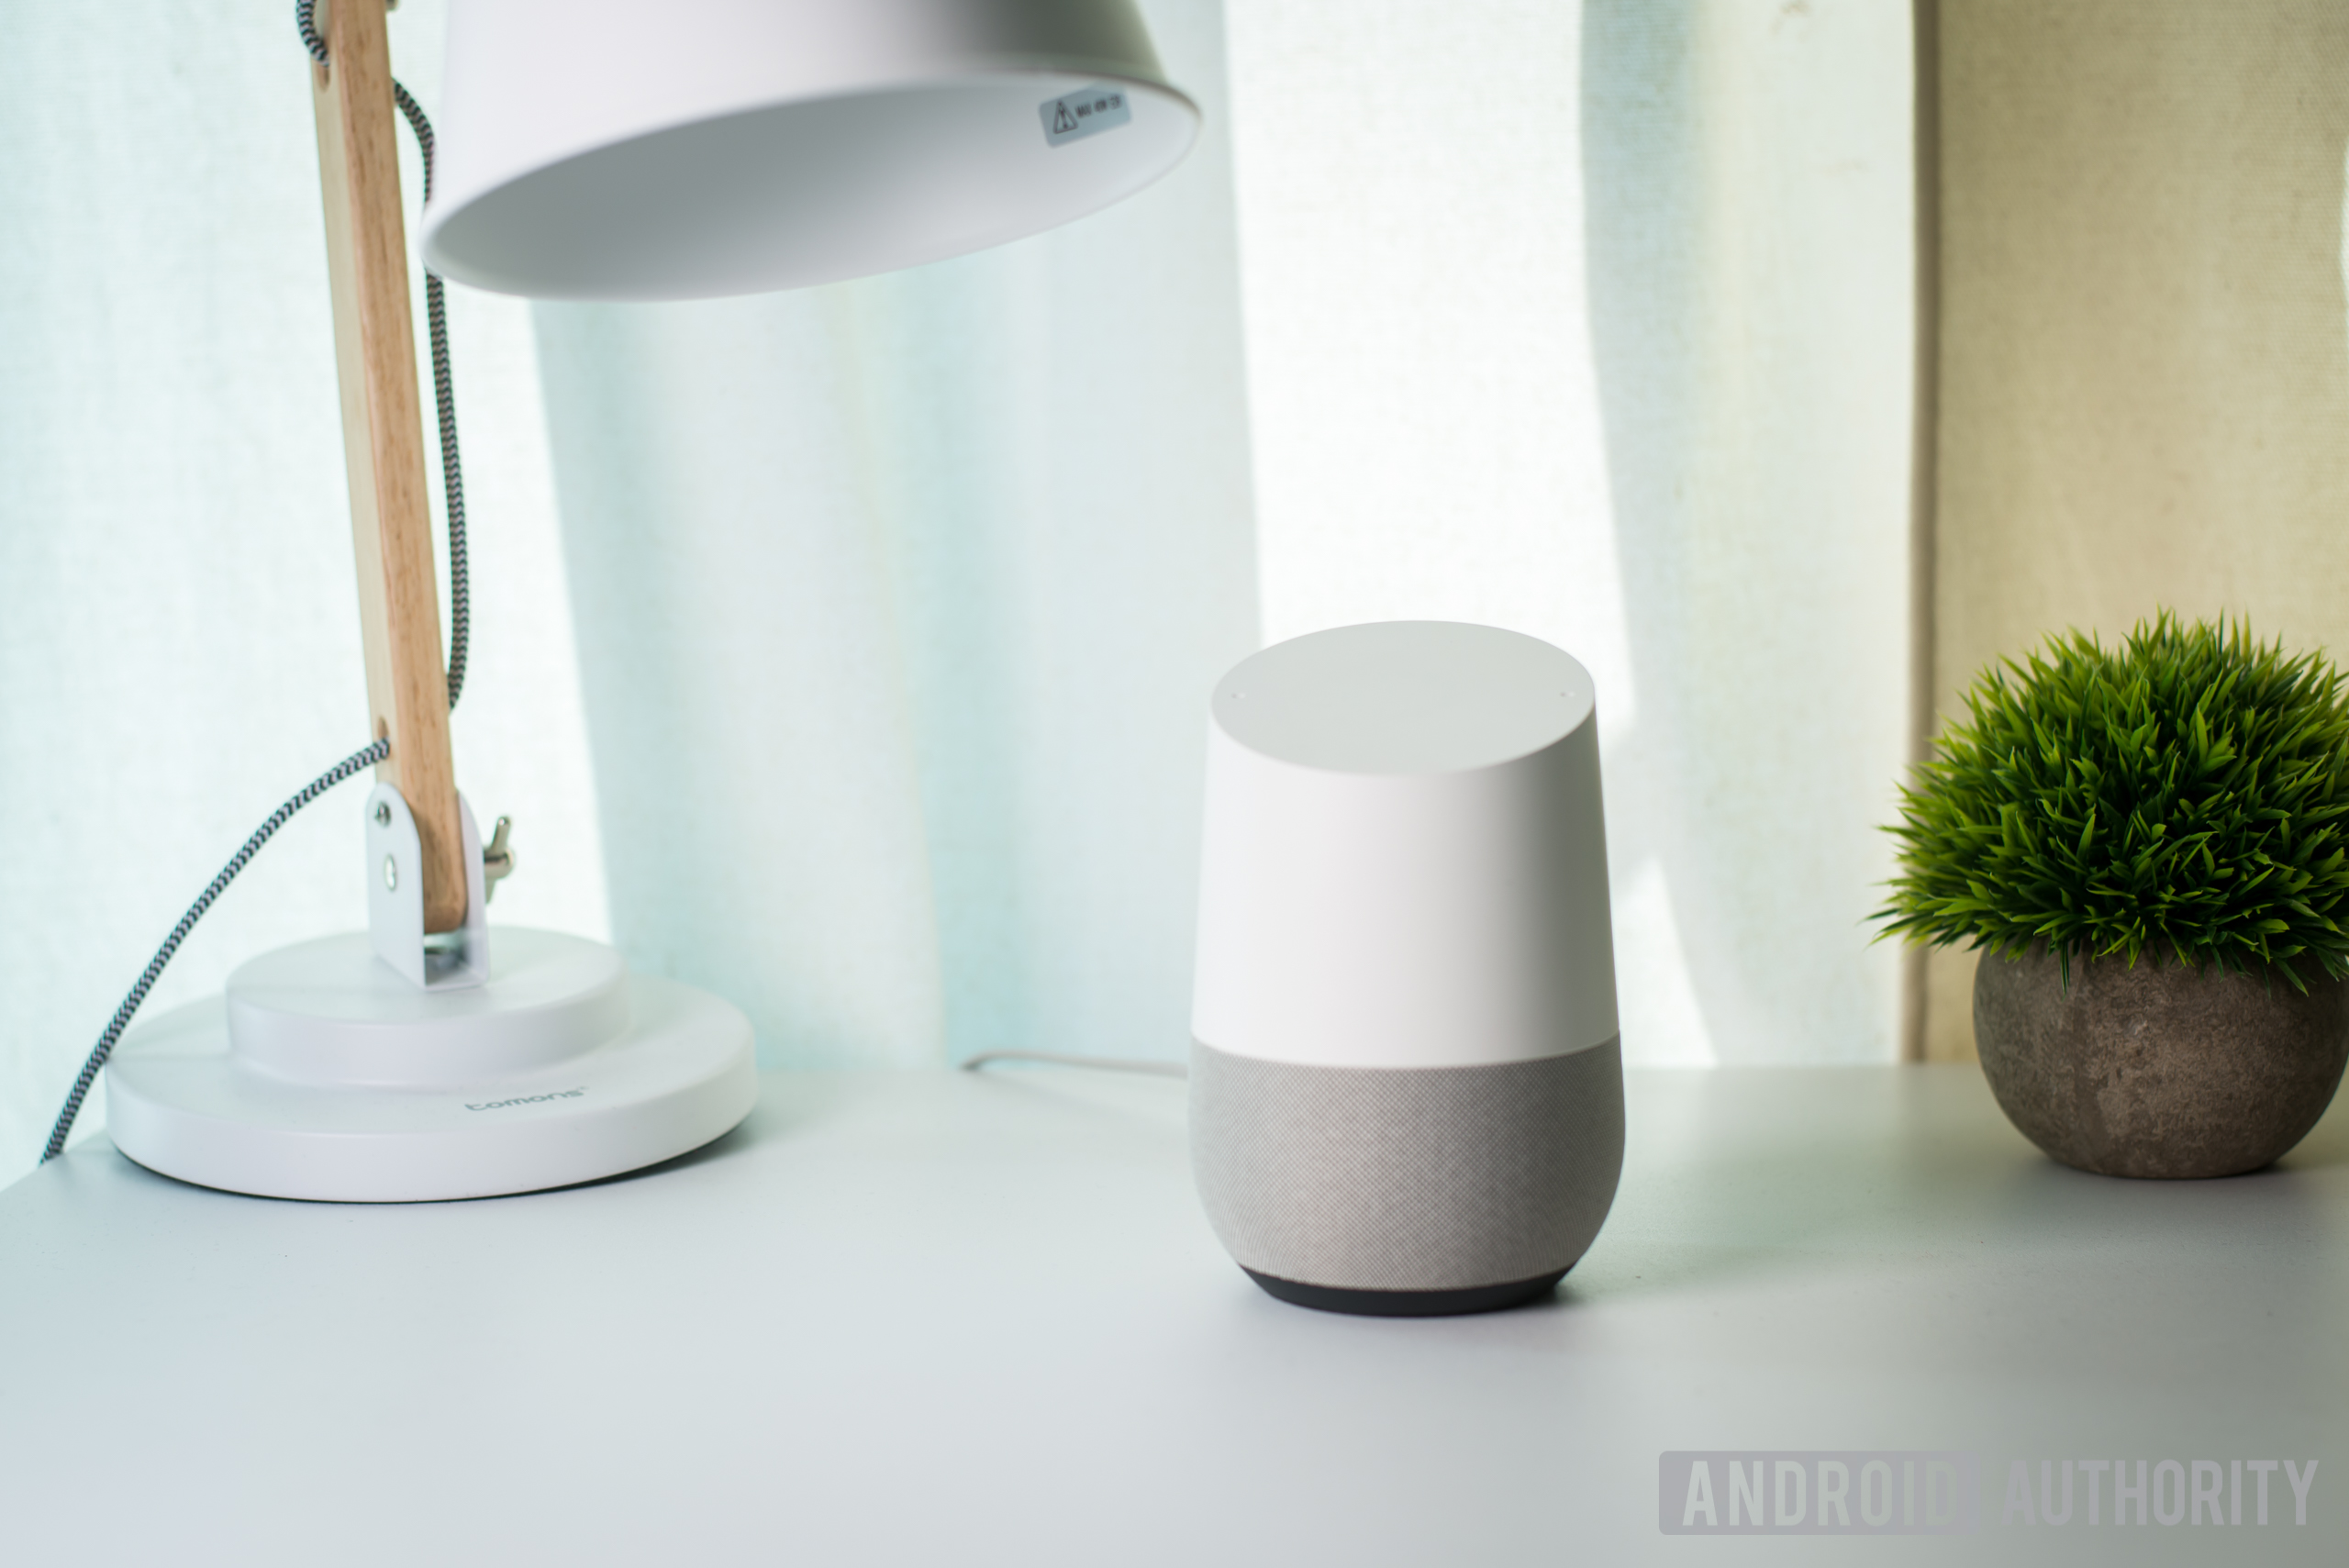 Google Home smart speaker on a desk - Google Home privacy